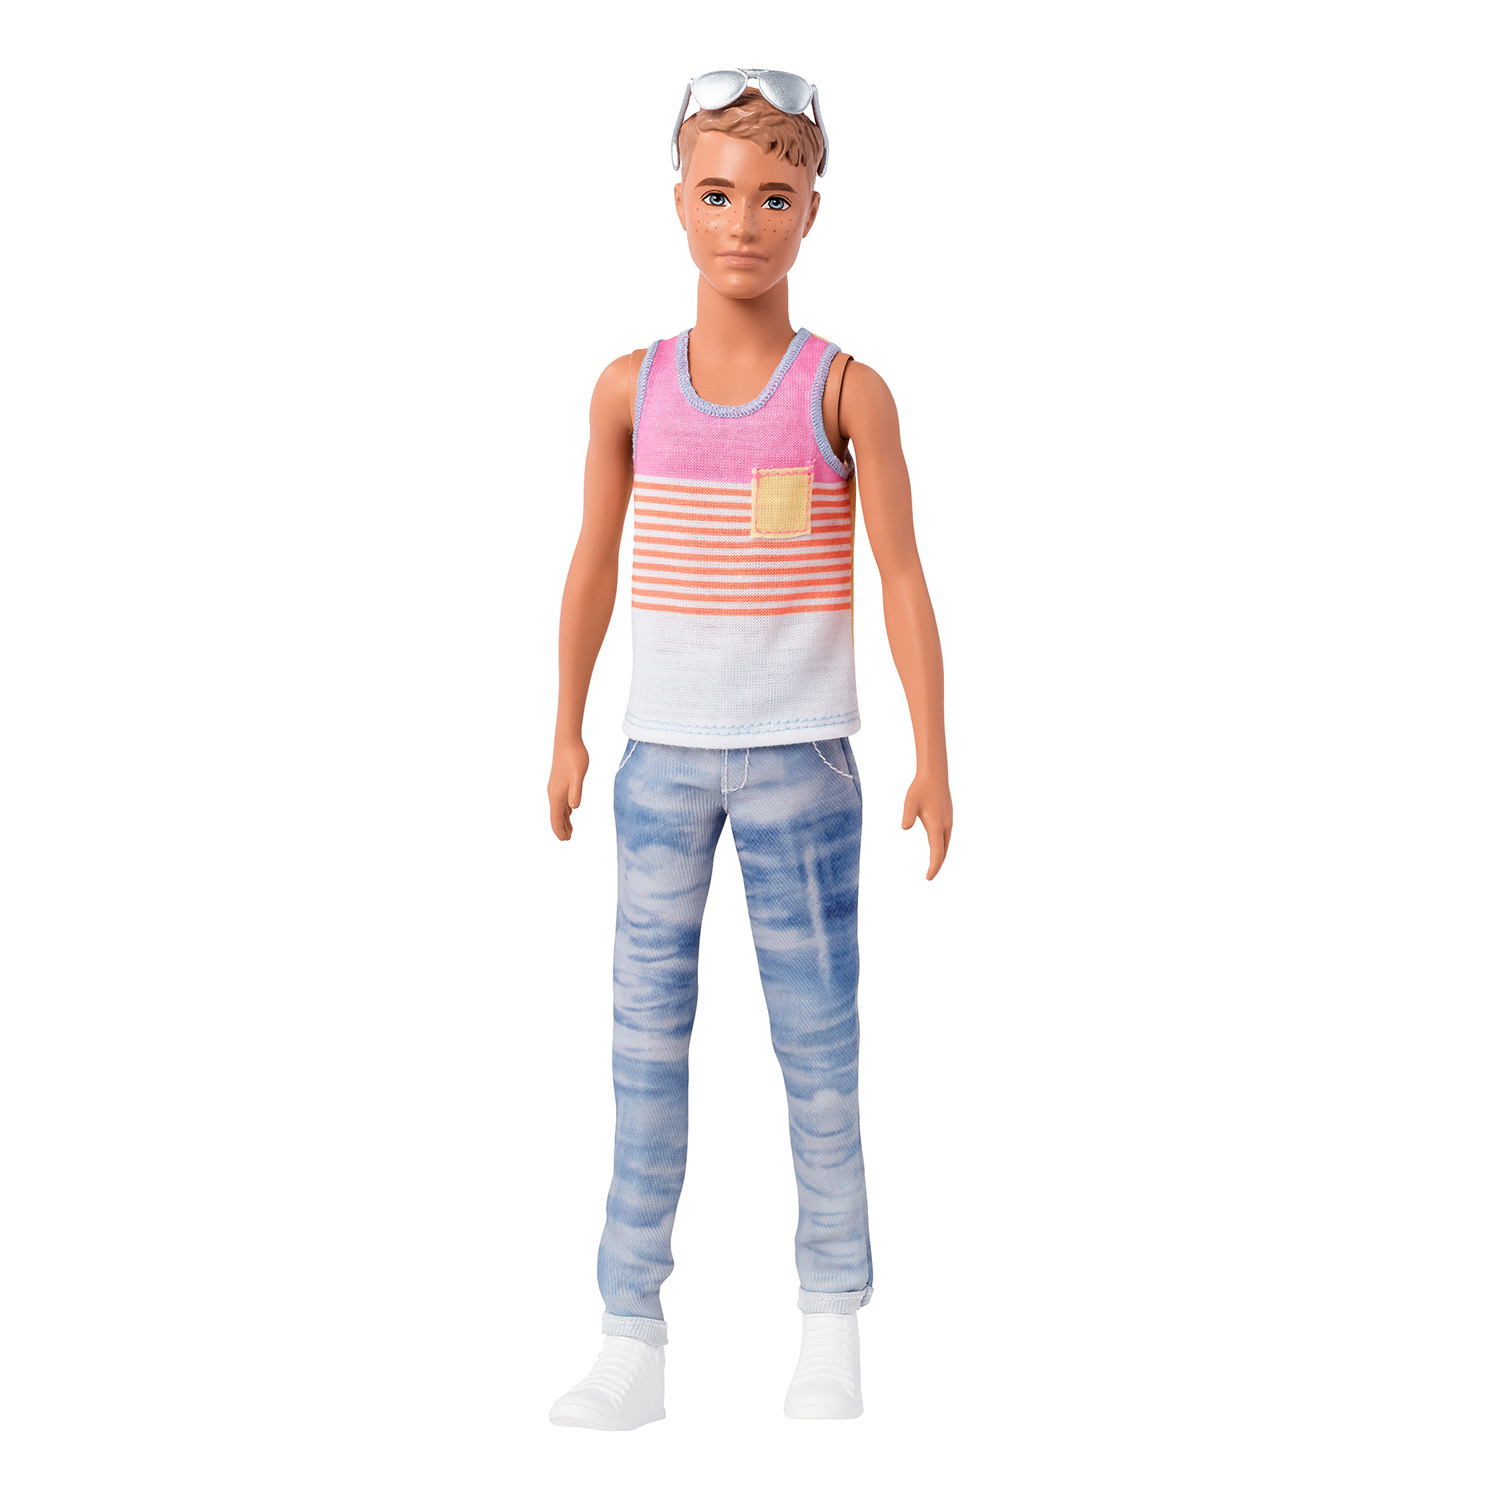 Кукла Barbie Игра с модой Кен FNH43 DWK44 - фото 4